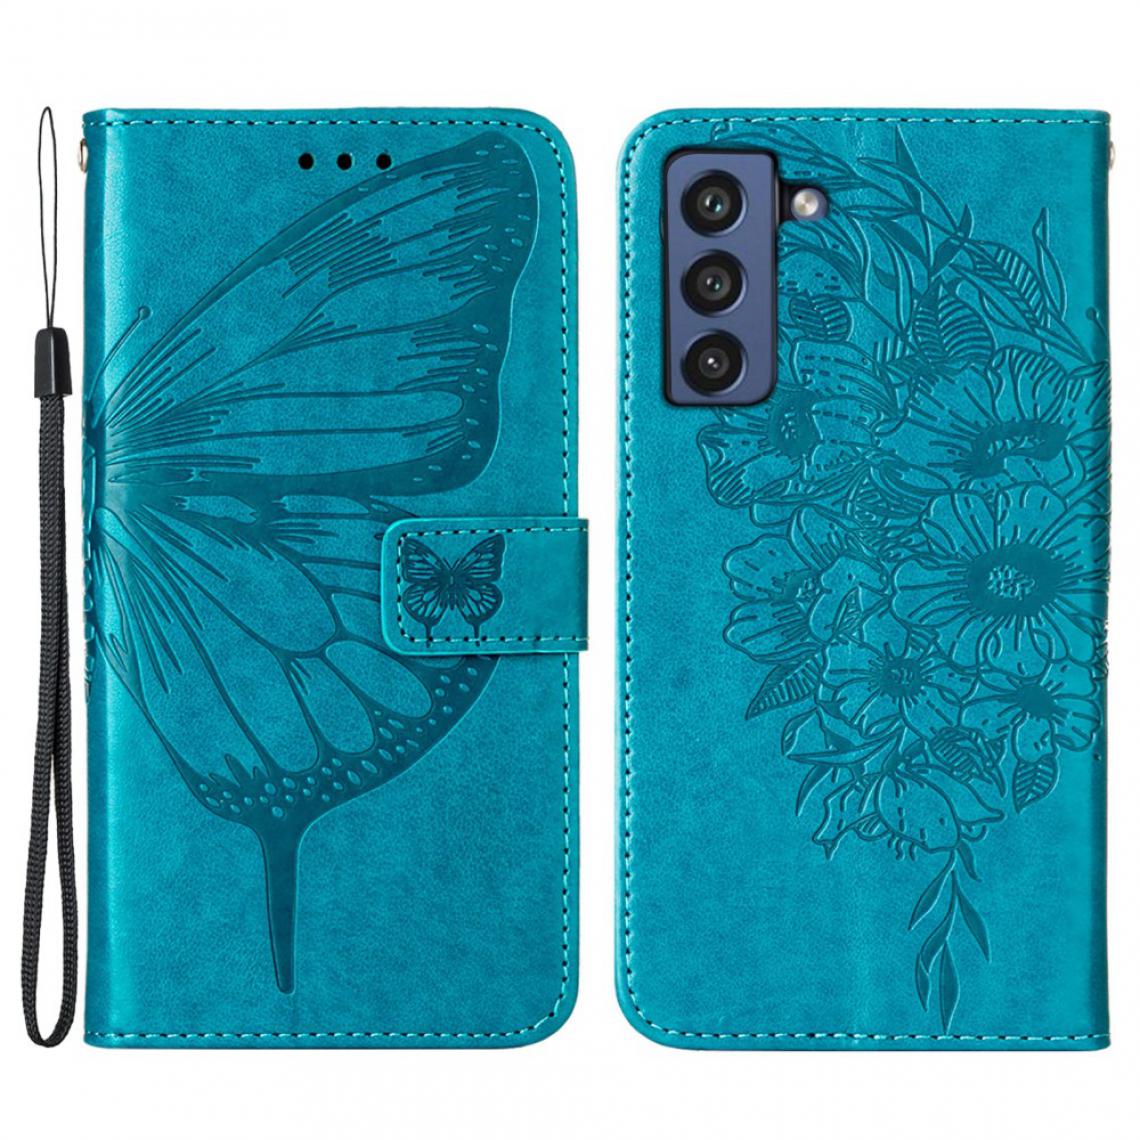 Other - Etui en PU Empreinte Papillon Fleur Motif avec support bleu pour votre Samsung Galaxy S21 FE - Coque, étui smartphone